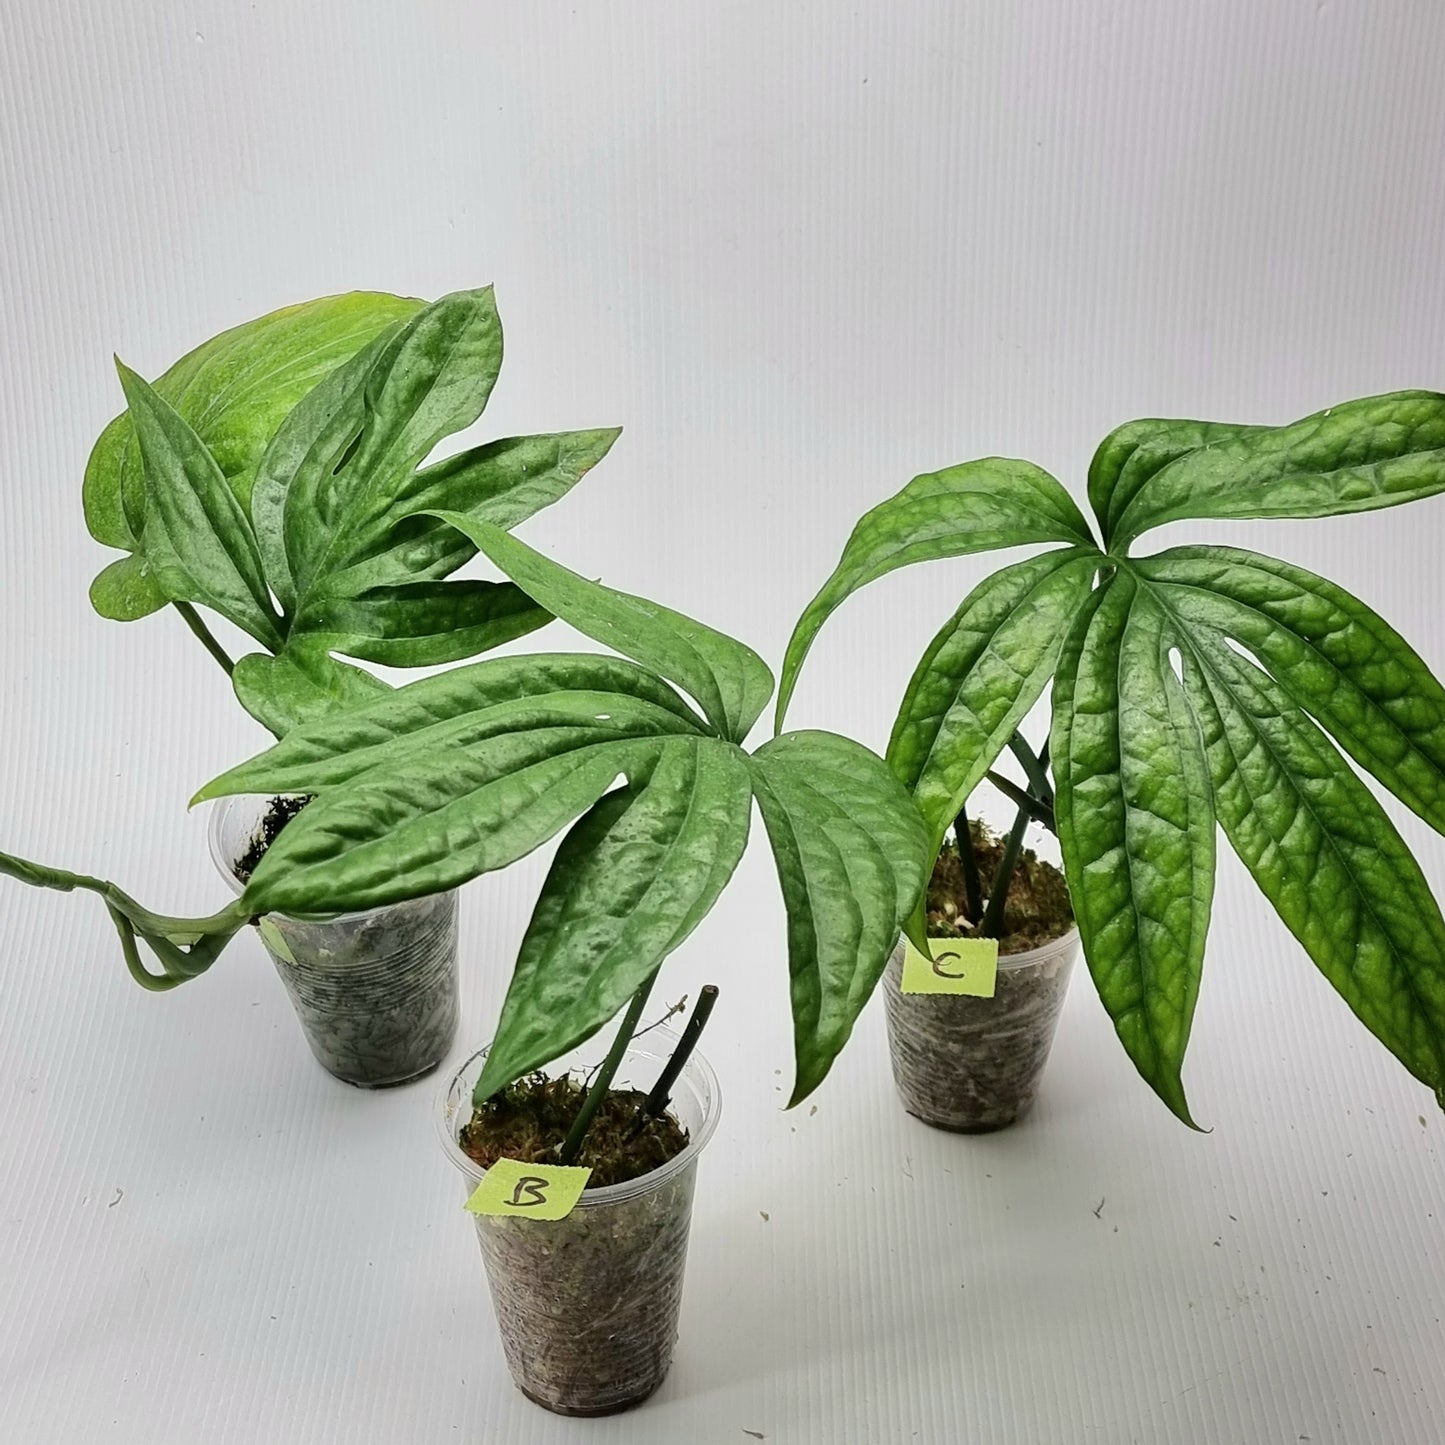 rare Amydrium zippelianum for sale in Perth Australia